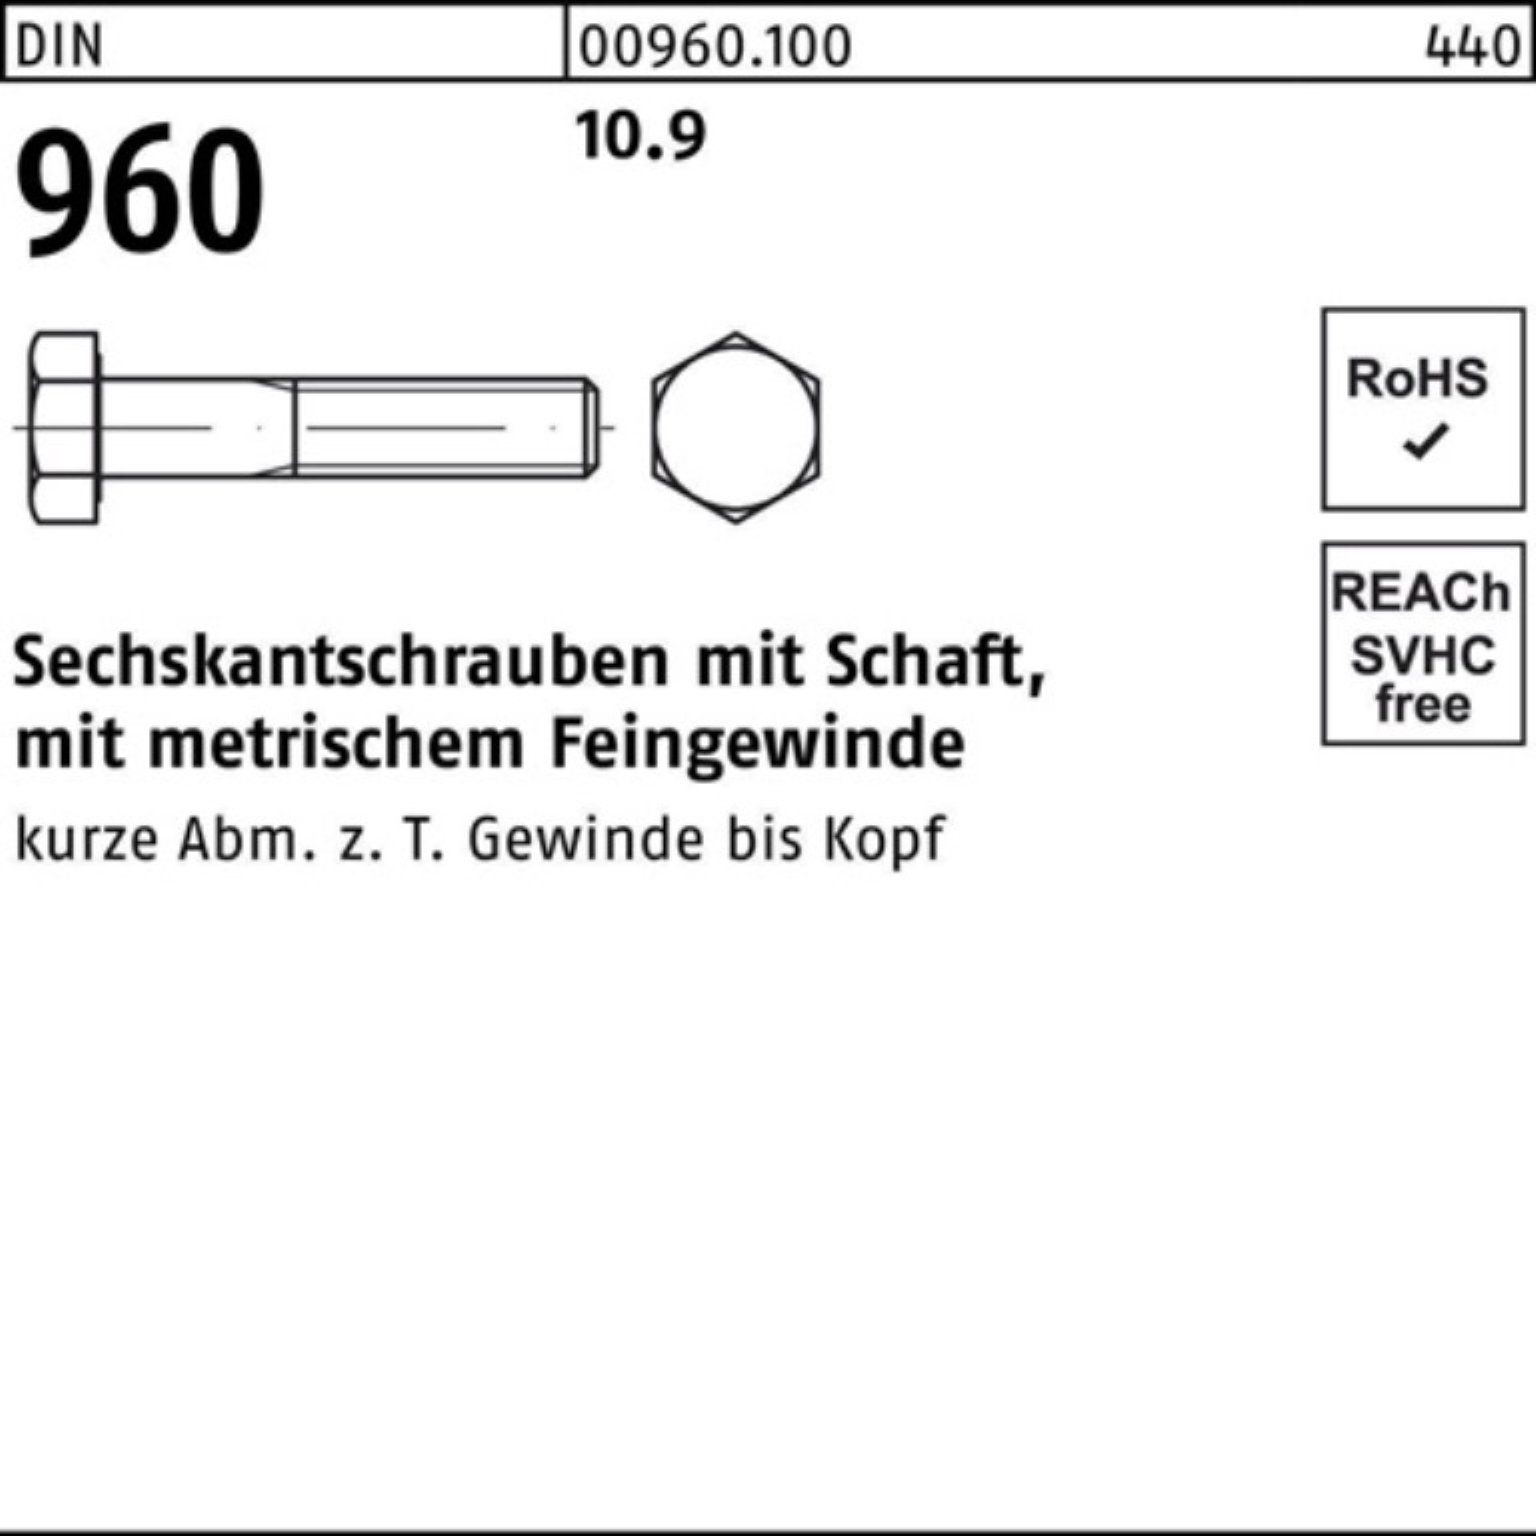 Pack 50 Schaft Reyher 10.9 Stüc Sechskantschraube 960 Sechskantschraube M12x1,25x120 100er DIN